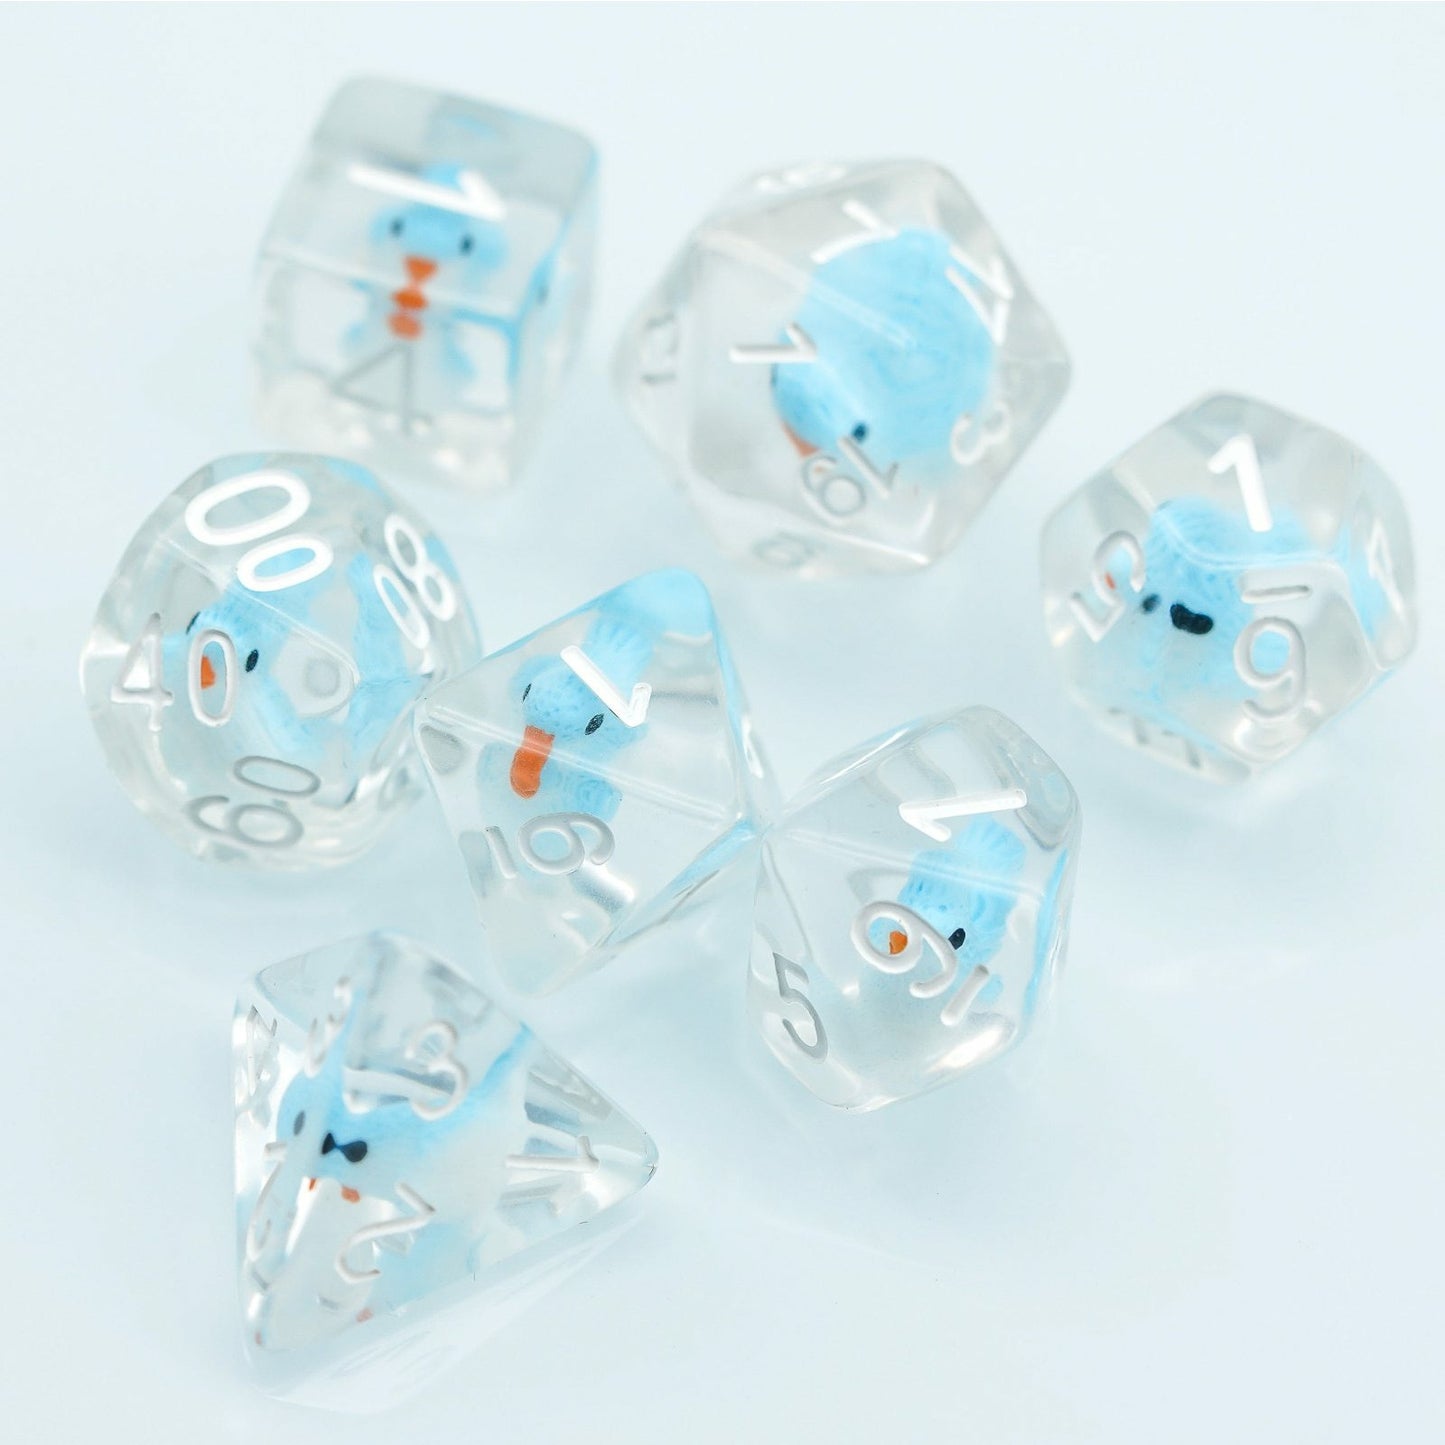 7 piece transparent birdy dice set, blue birds in clear plastic